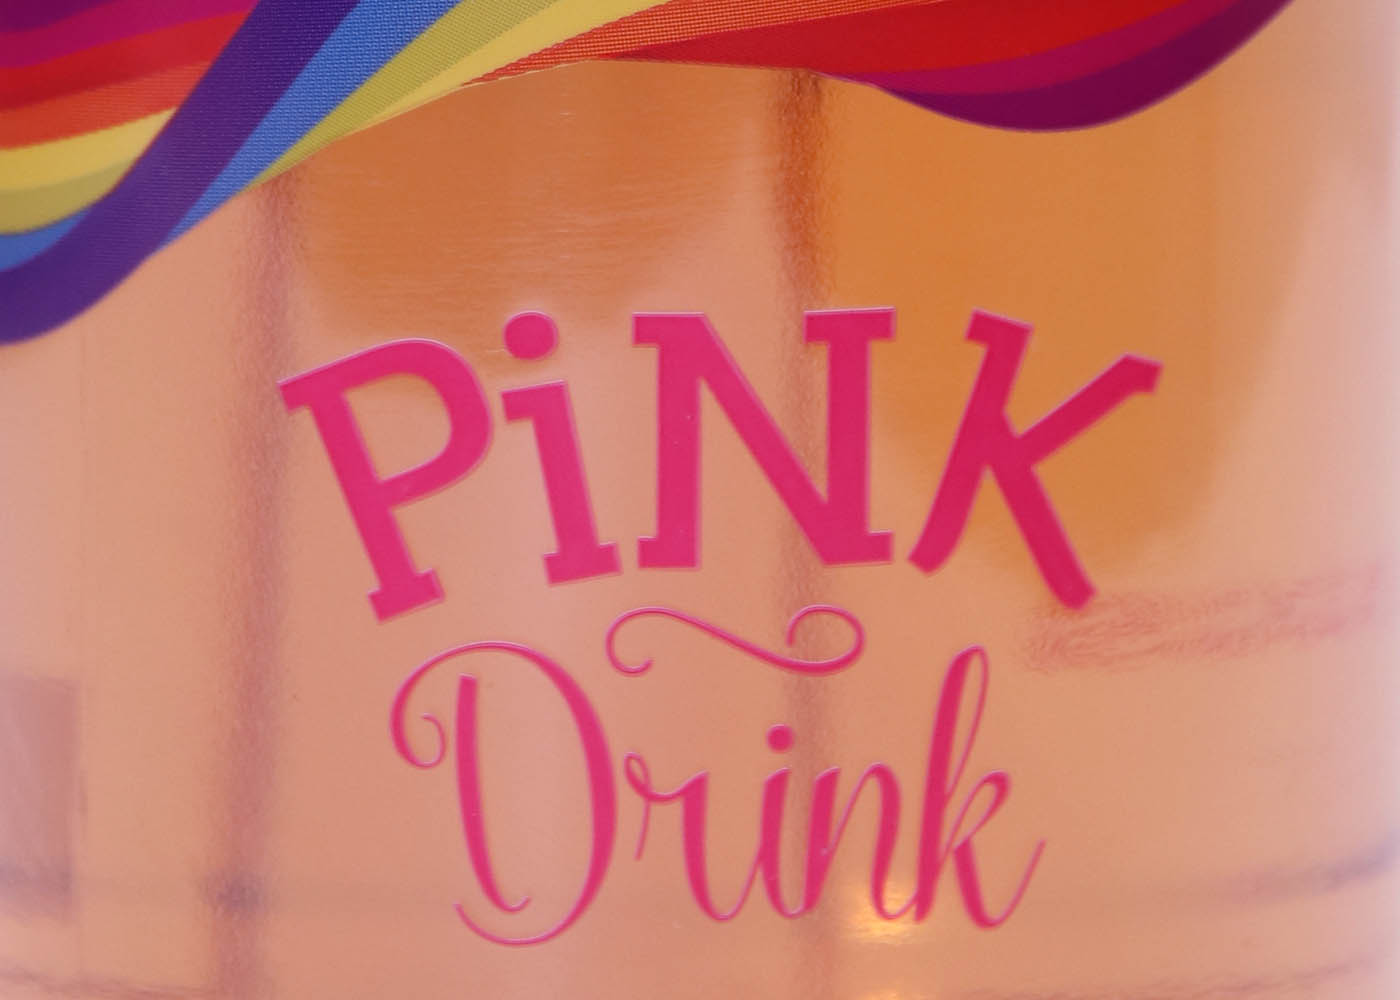 Pink bottle label